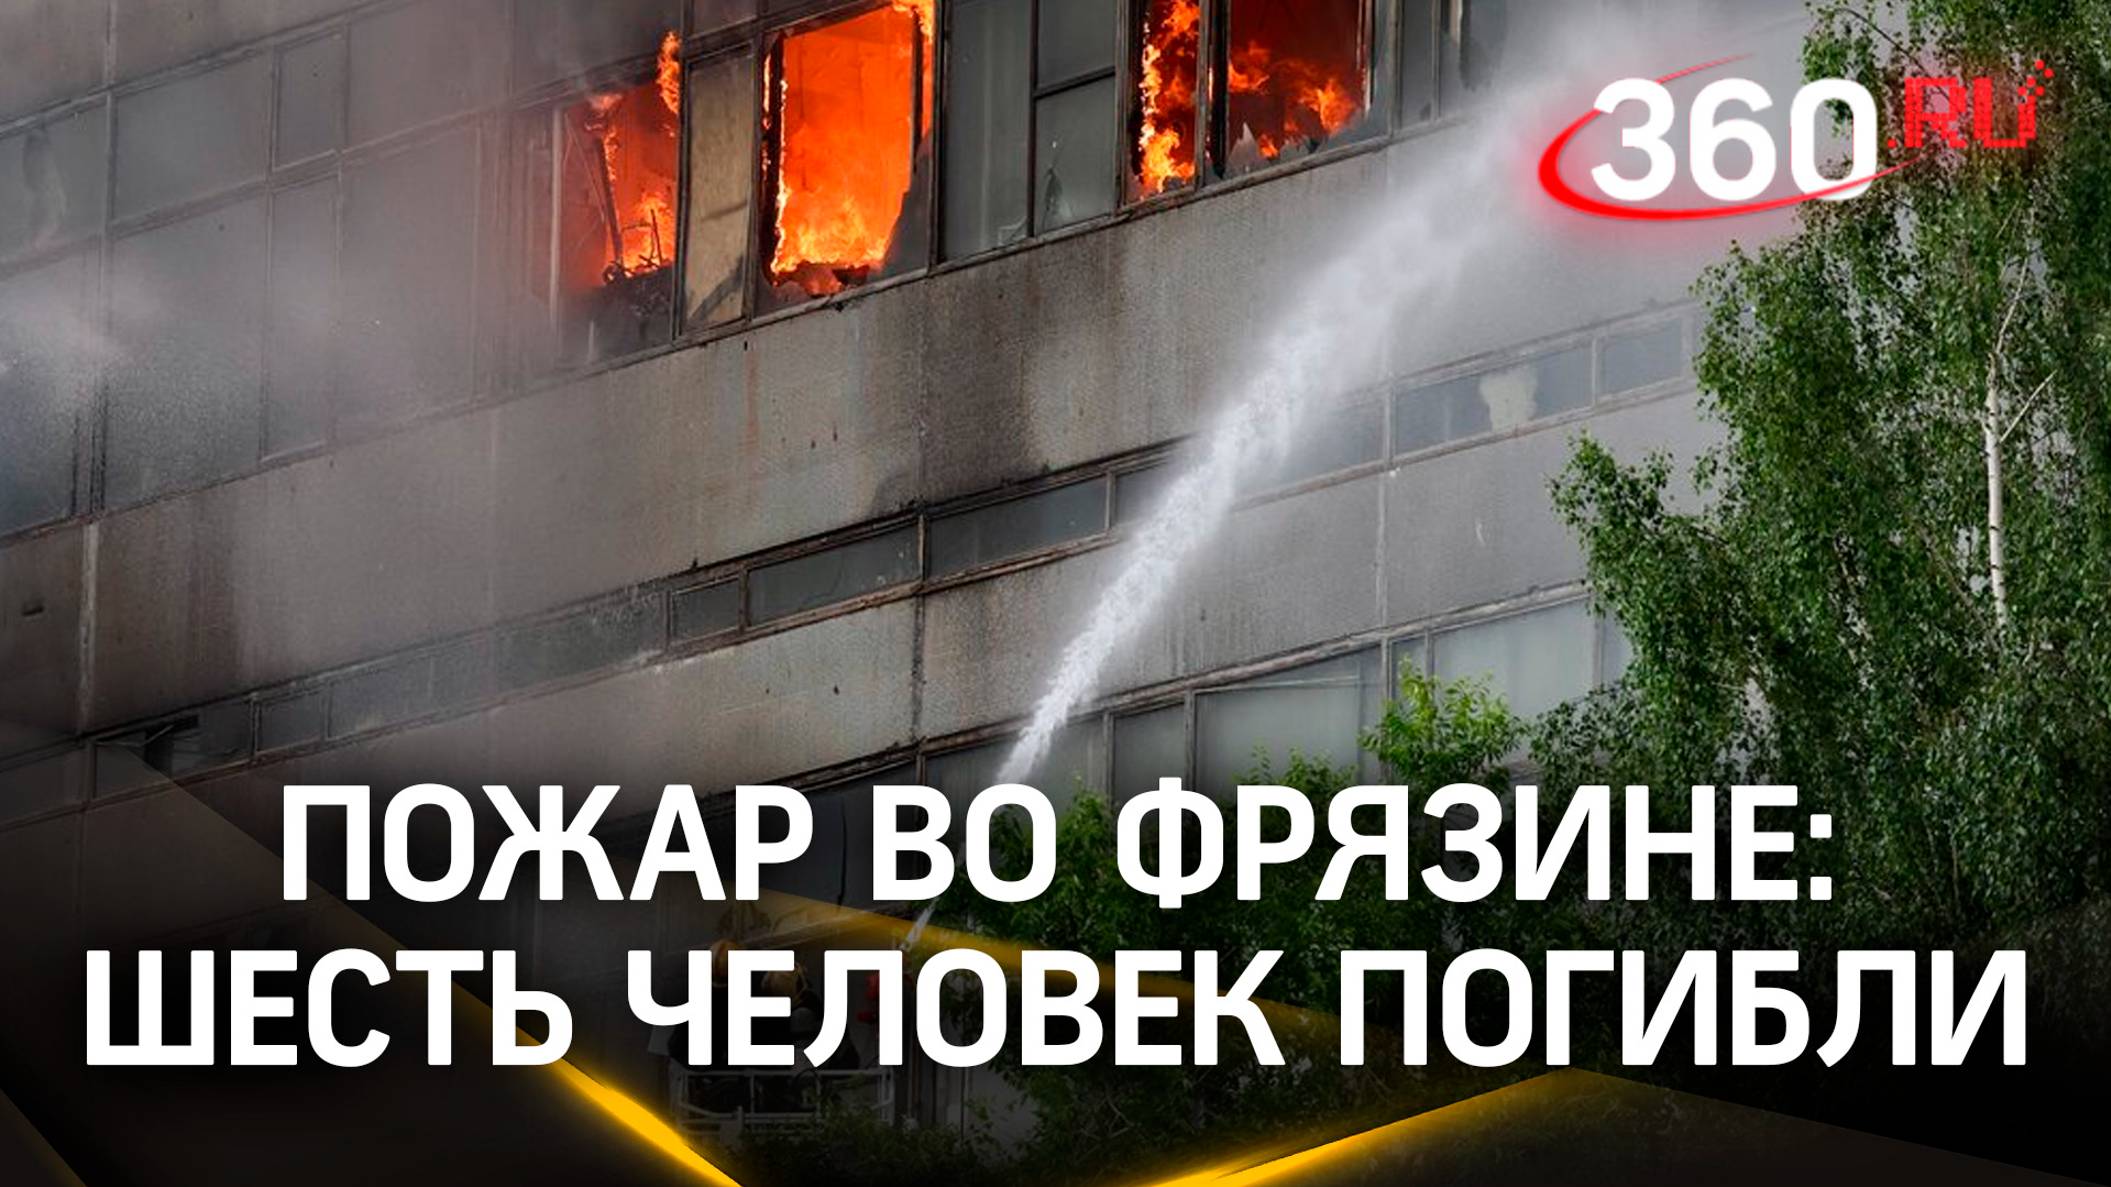 Шесть человек погибли при пожаре во Фрязине. Власти открыли горячую линию